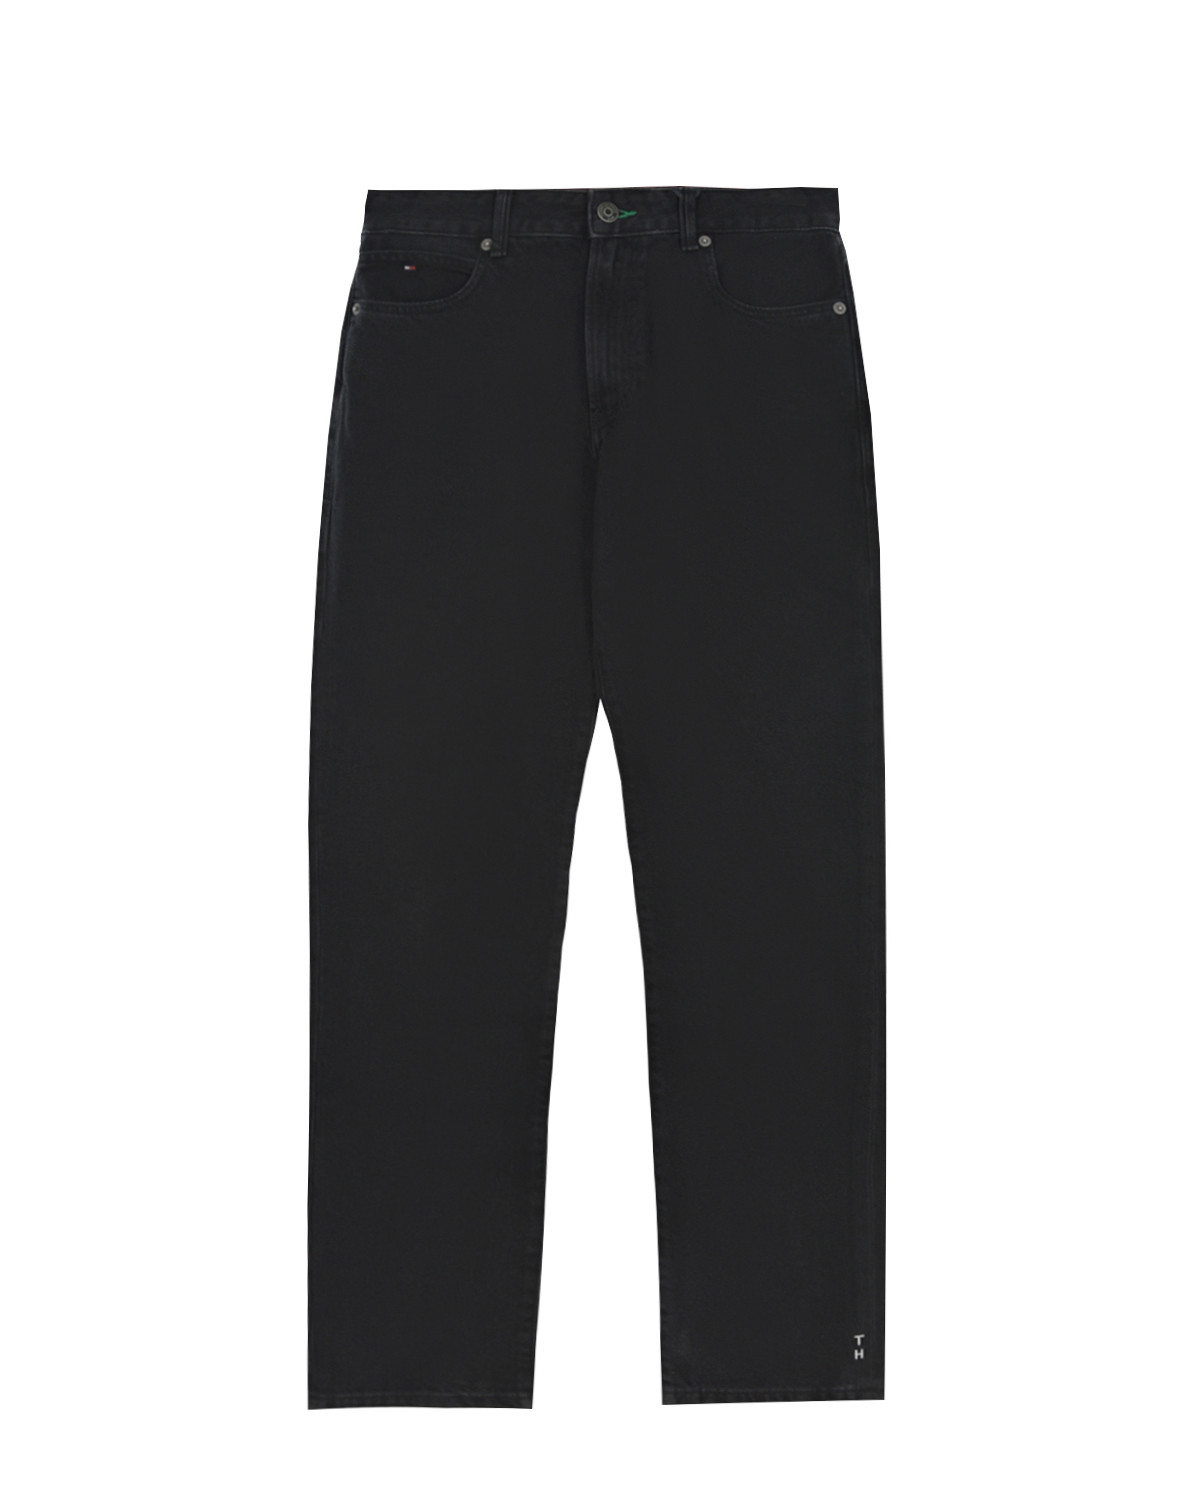 Черные джинсы прямого кроя Tommy Hilfiger детские, размер 140, цвет черный